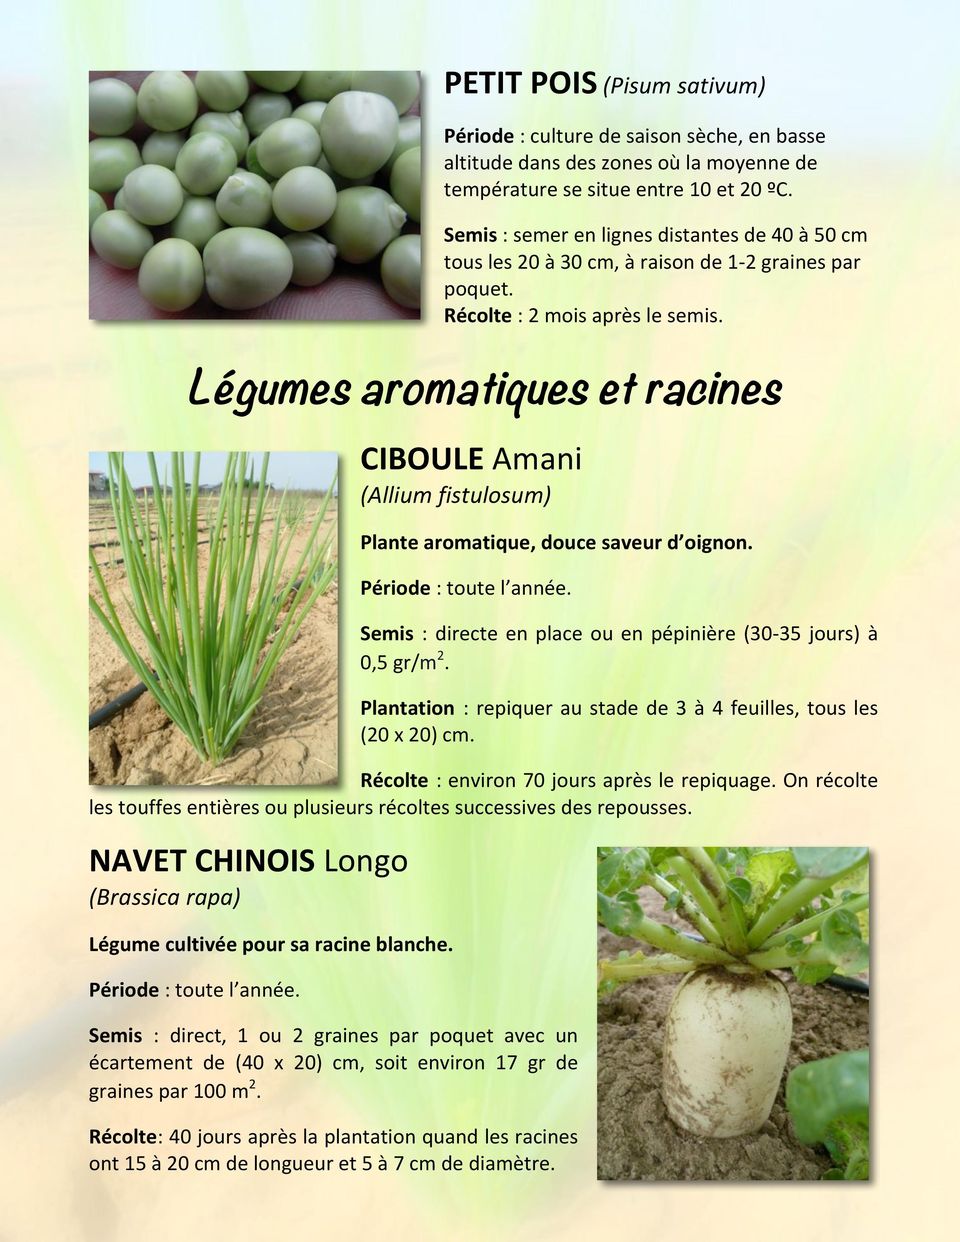 Légumes aromatiques et racines CIBOULEAmani (Allium+fistulosum) Plantearomatique,doucesaveurd oignon. Période:toutel année. Semis :directeenplaceouenpépinière(30035jours)à 0,5gr/m 2.